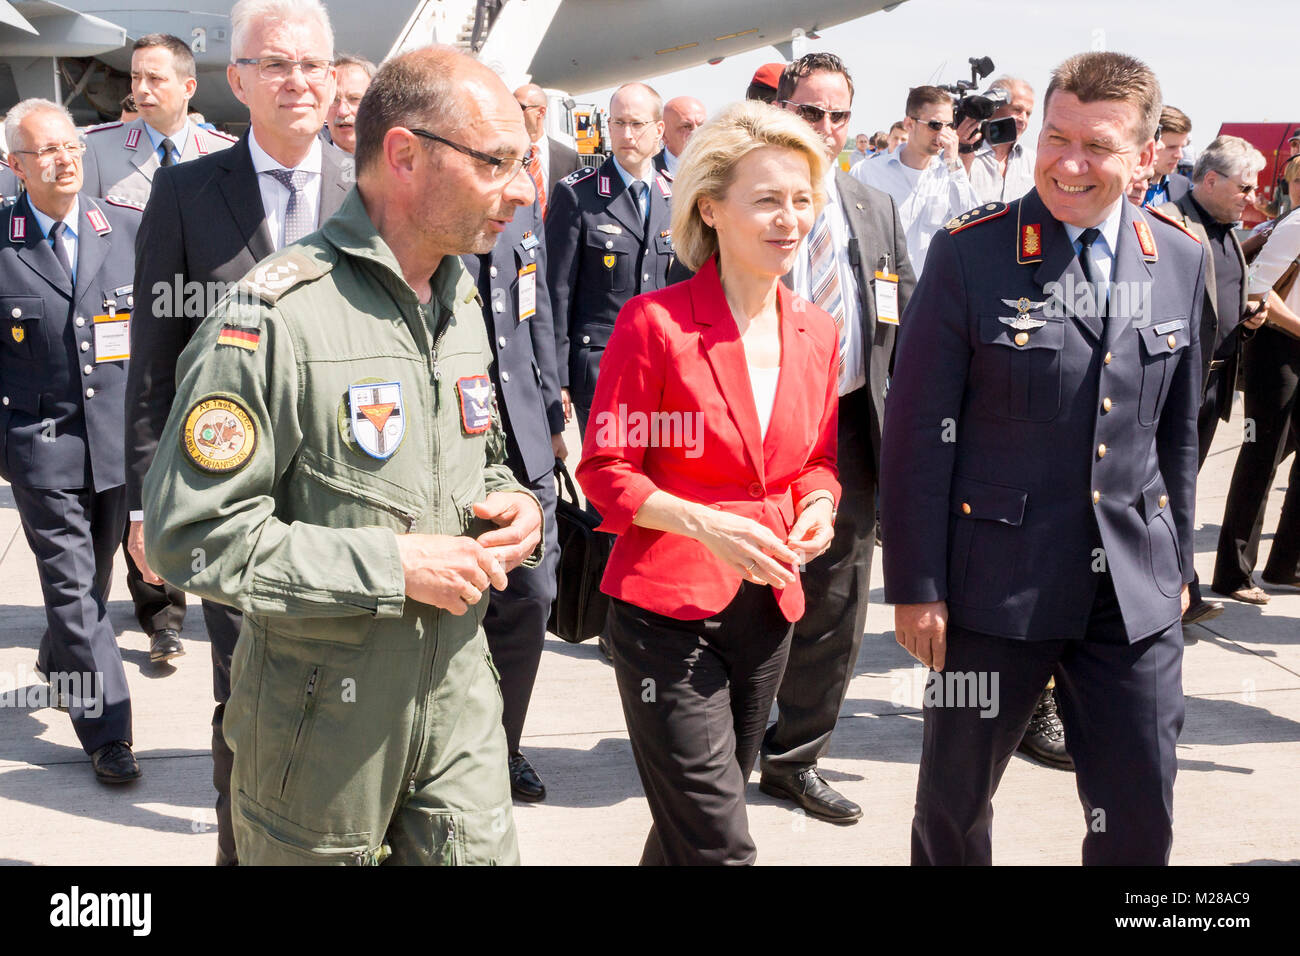 Rundgang Bundesministerin Dr. Ursula von der Leyen, MdB Bundesministerium der Verteidigung auf dem Freigelände der Bundeswehr der ILA 2014, Berlin Air Show. Foto Stock